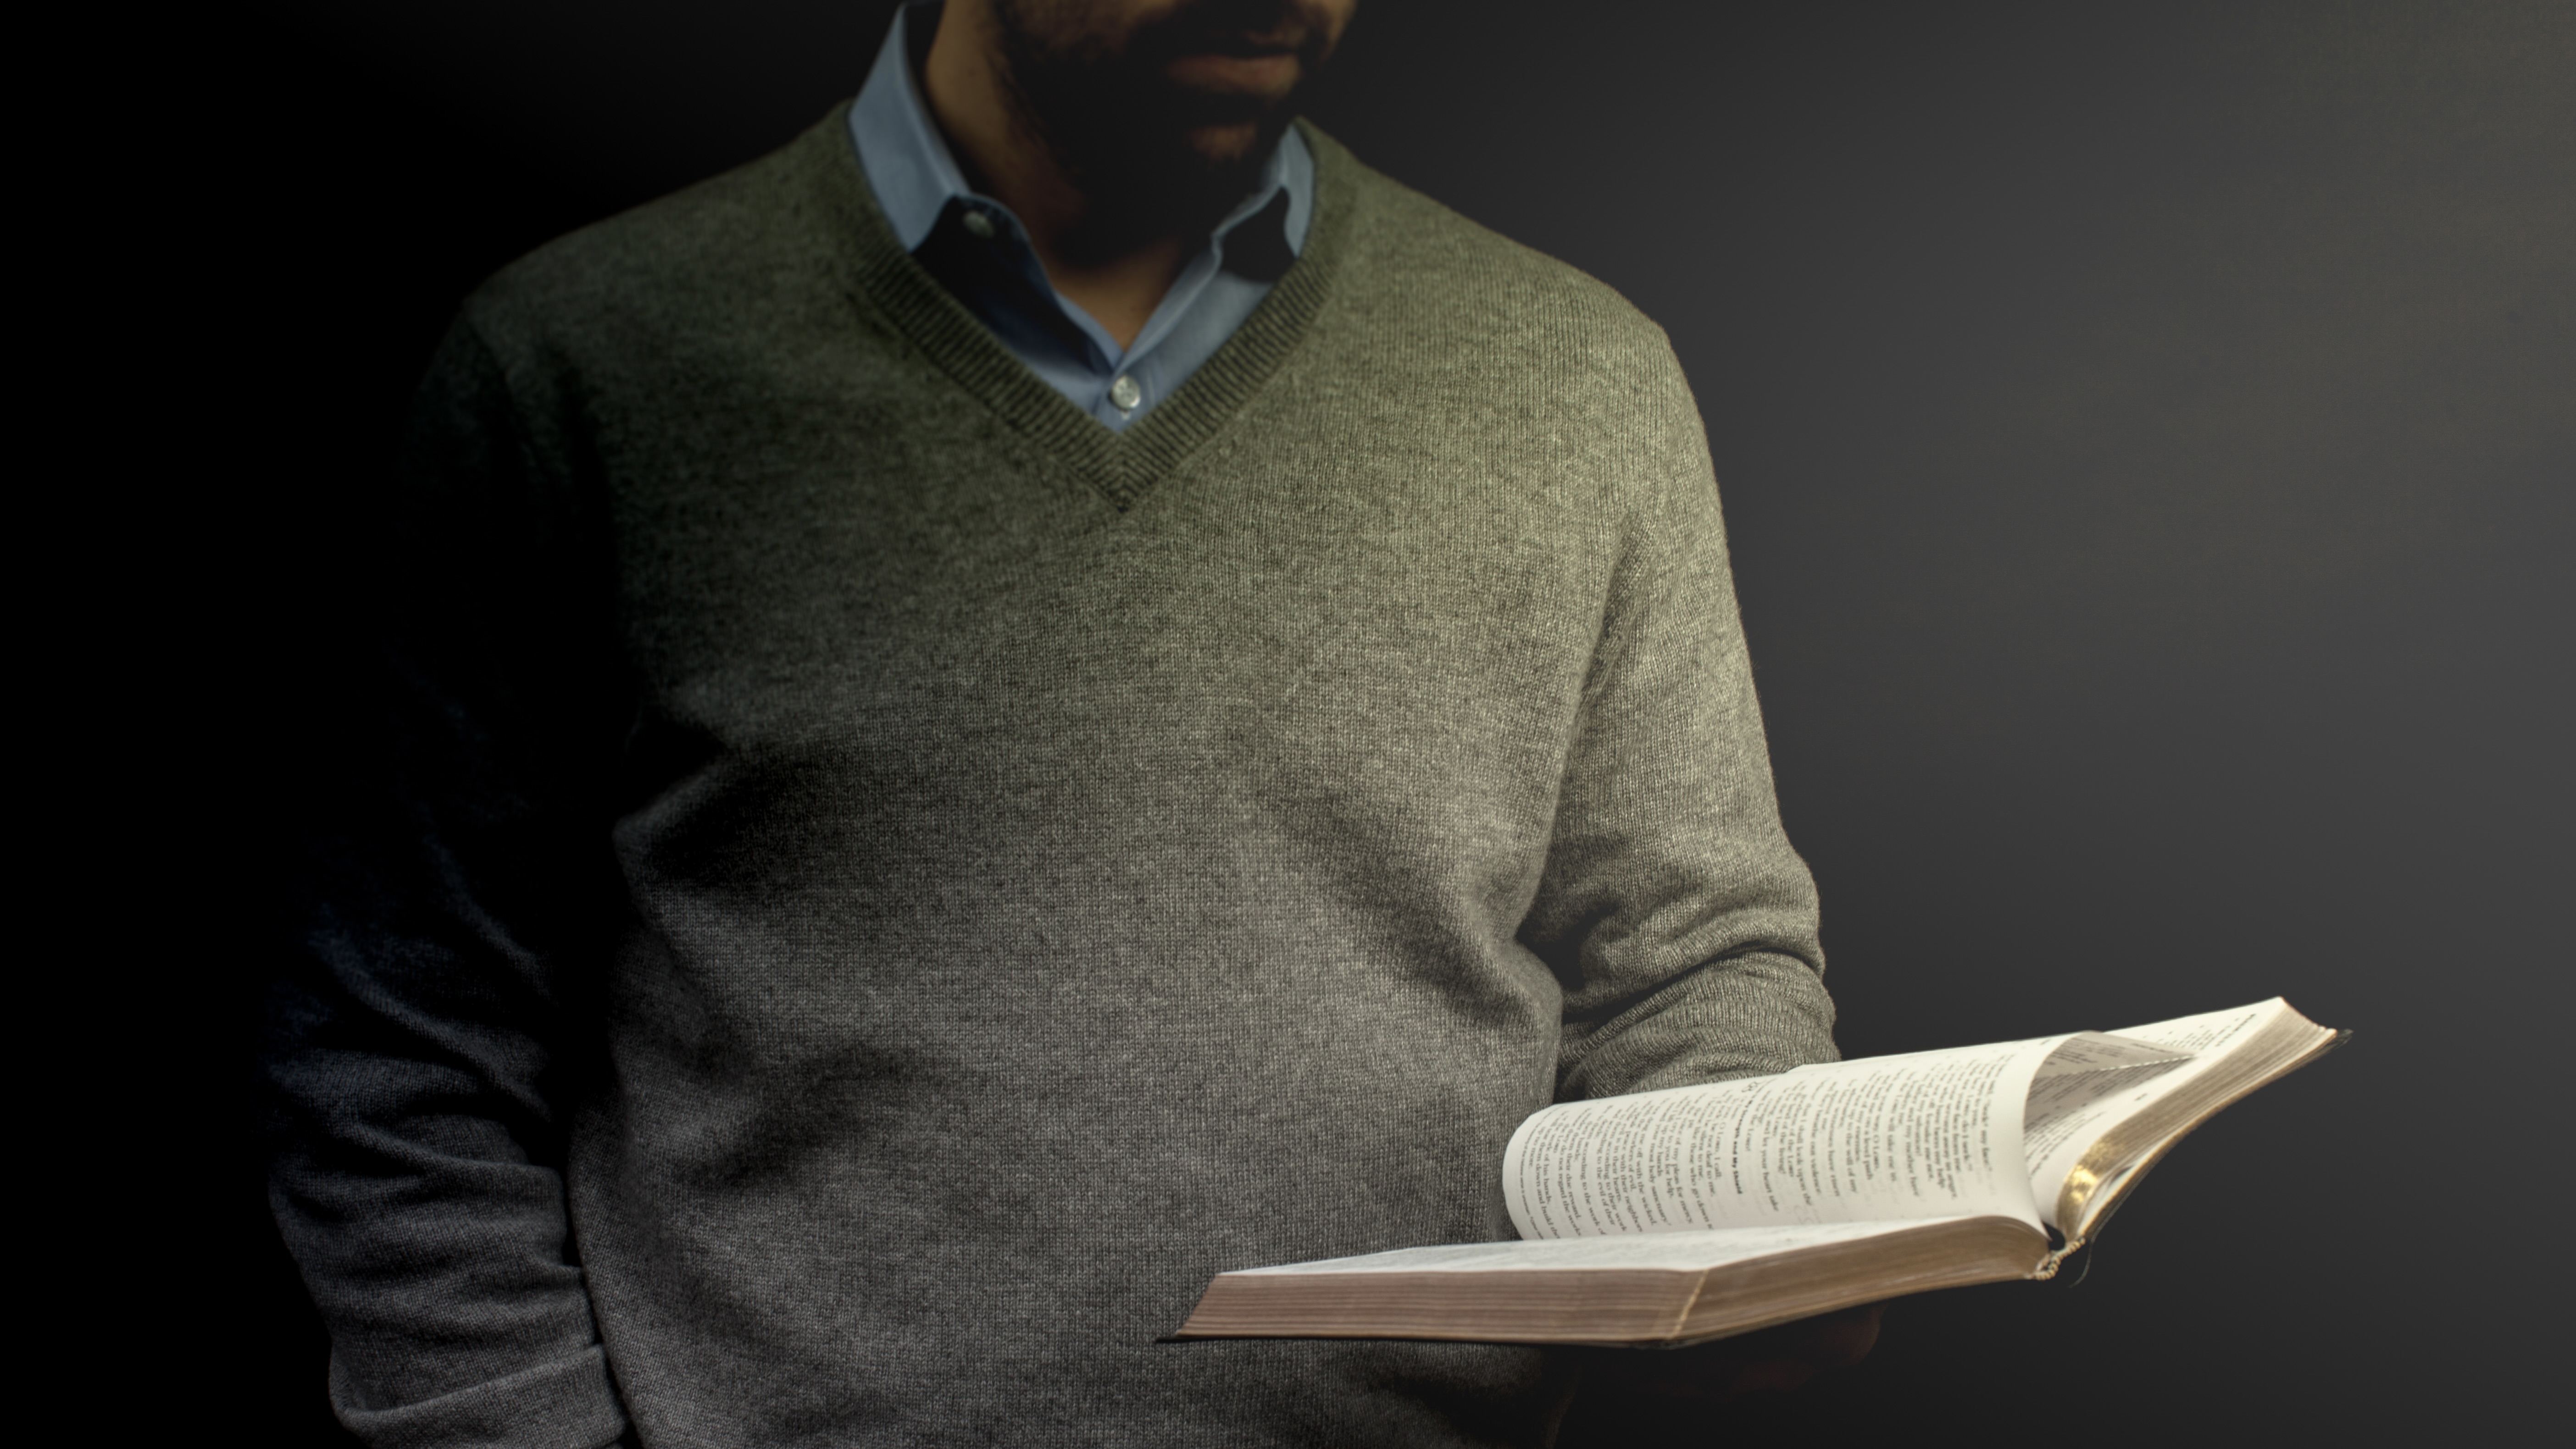 a_preacher_holding_a_bible_during_his_sermon-5616x3744